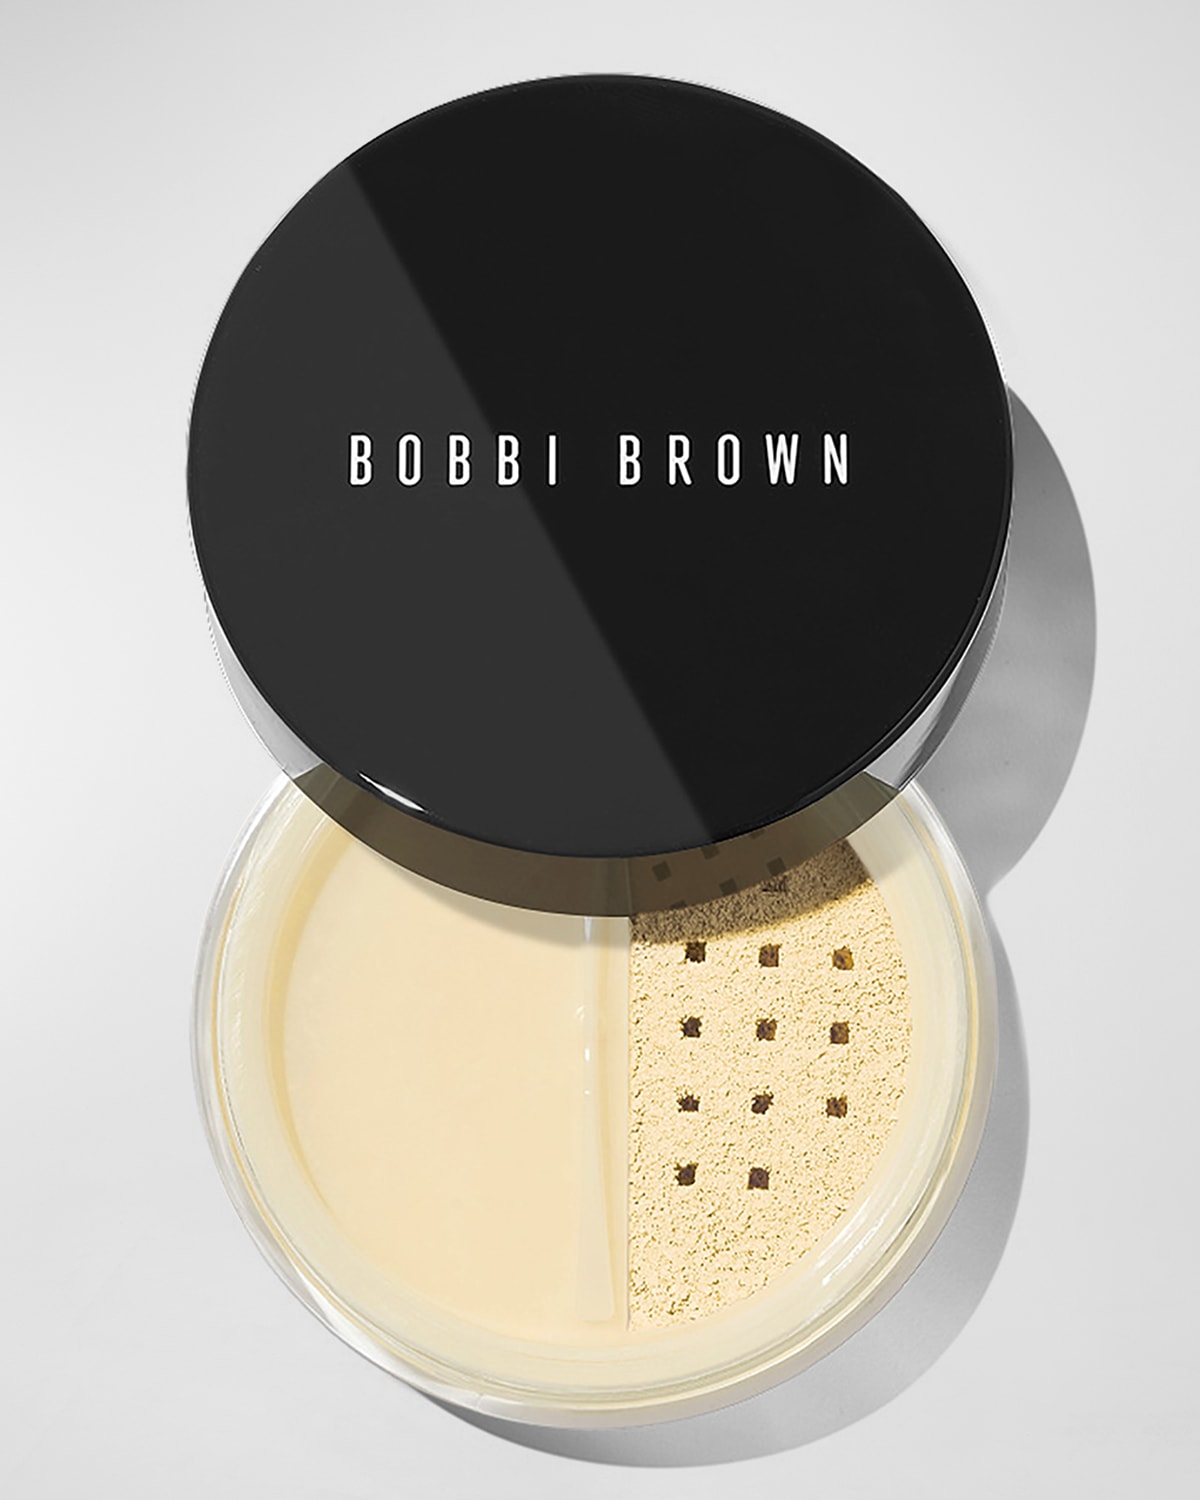 Bobbi Brown Loose Powder, Sheer Finish In White